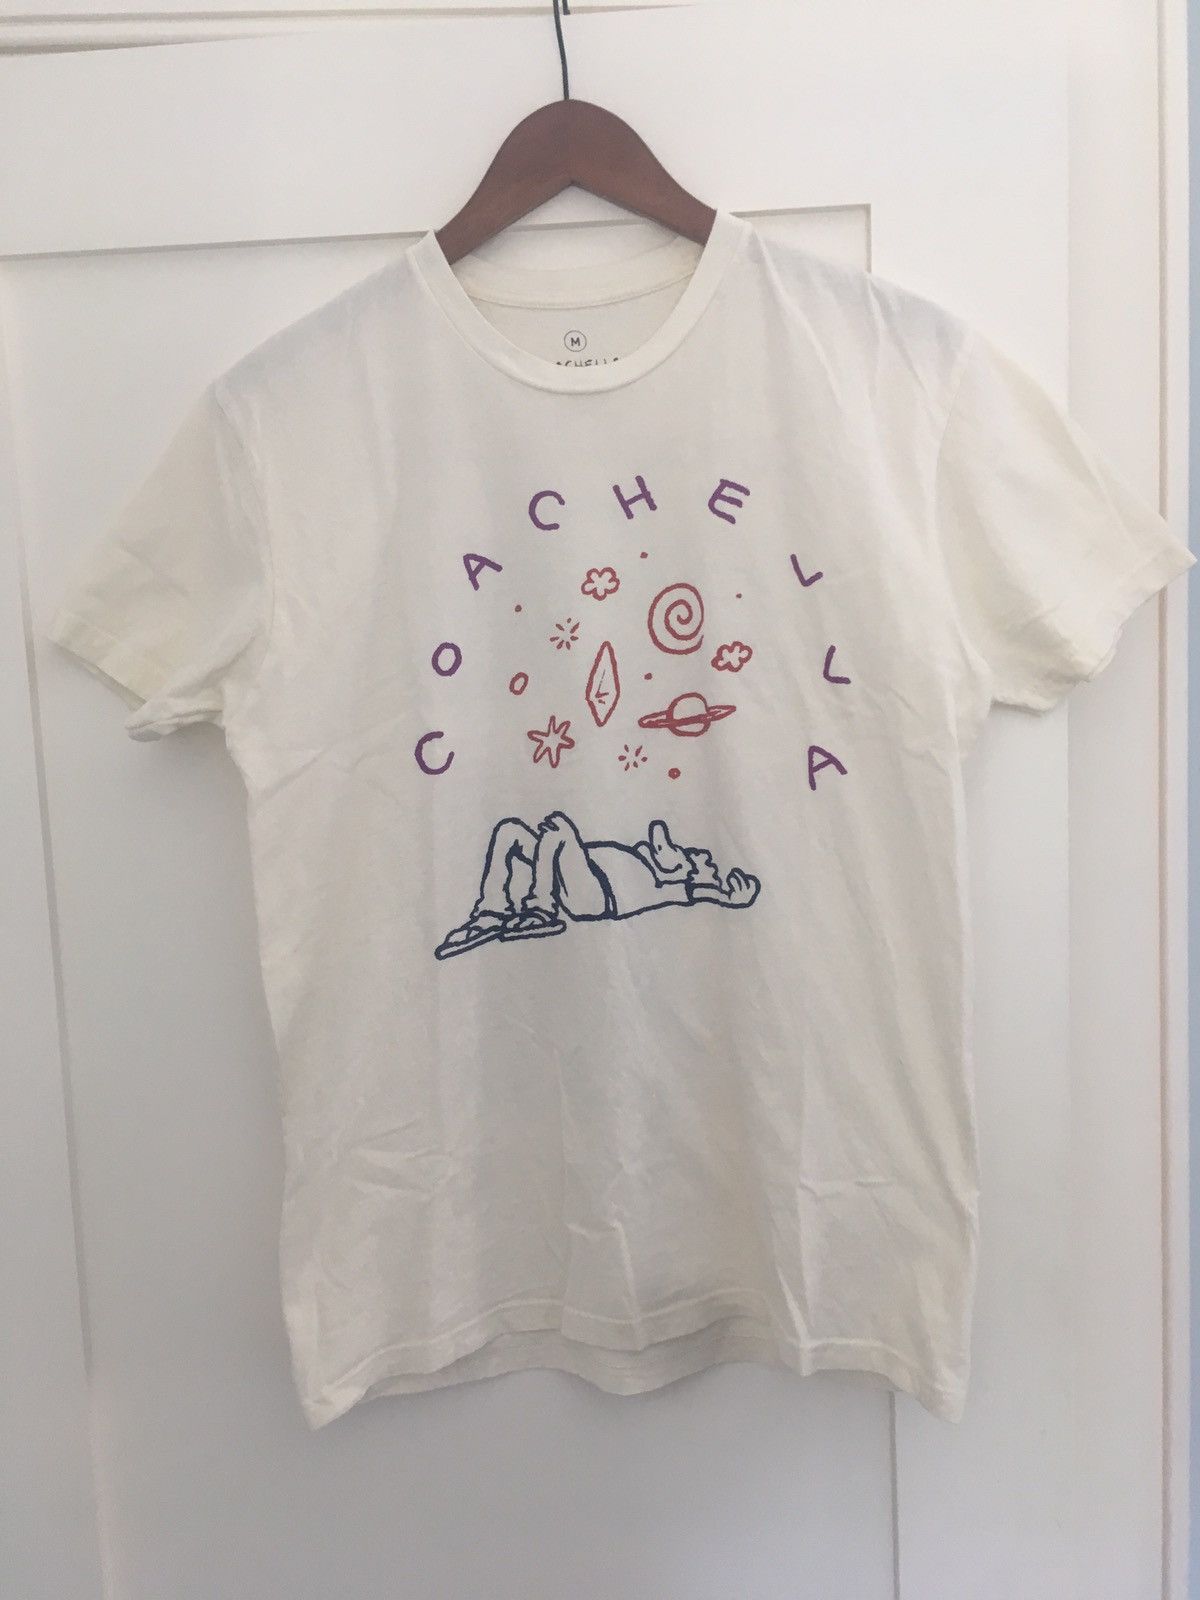 Coachella Coachella 2016 T-shirt Medium Size US M / EU 48-50 / 2 - 4 Preview